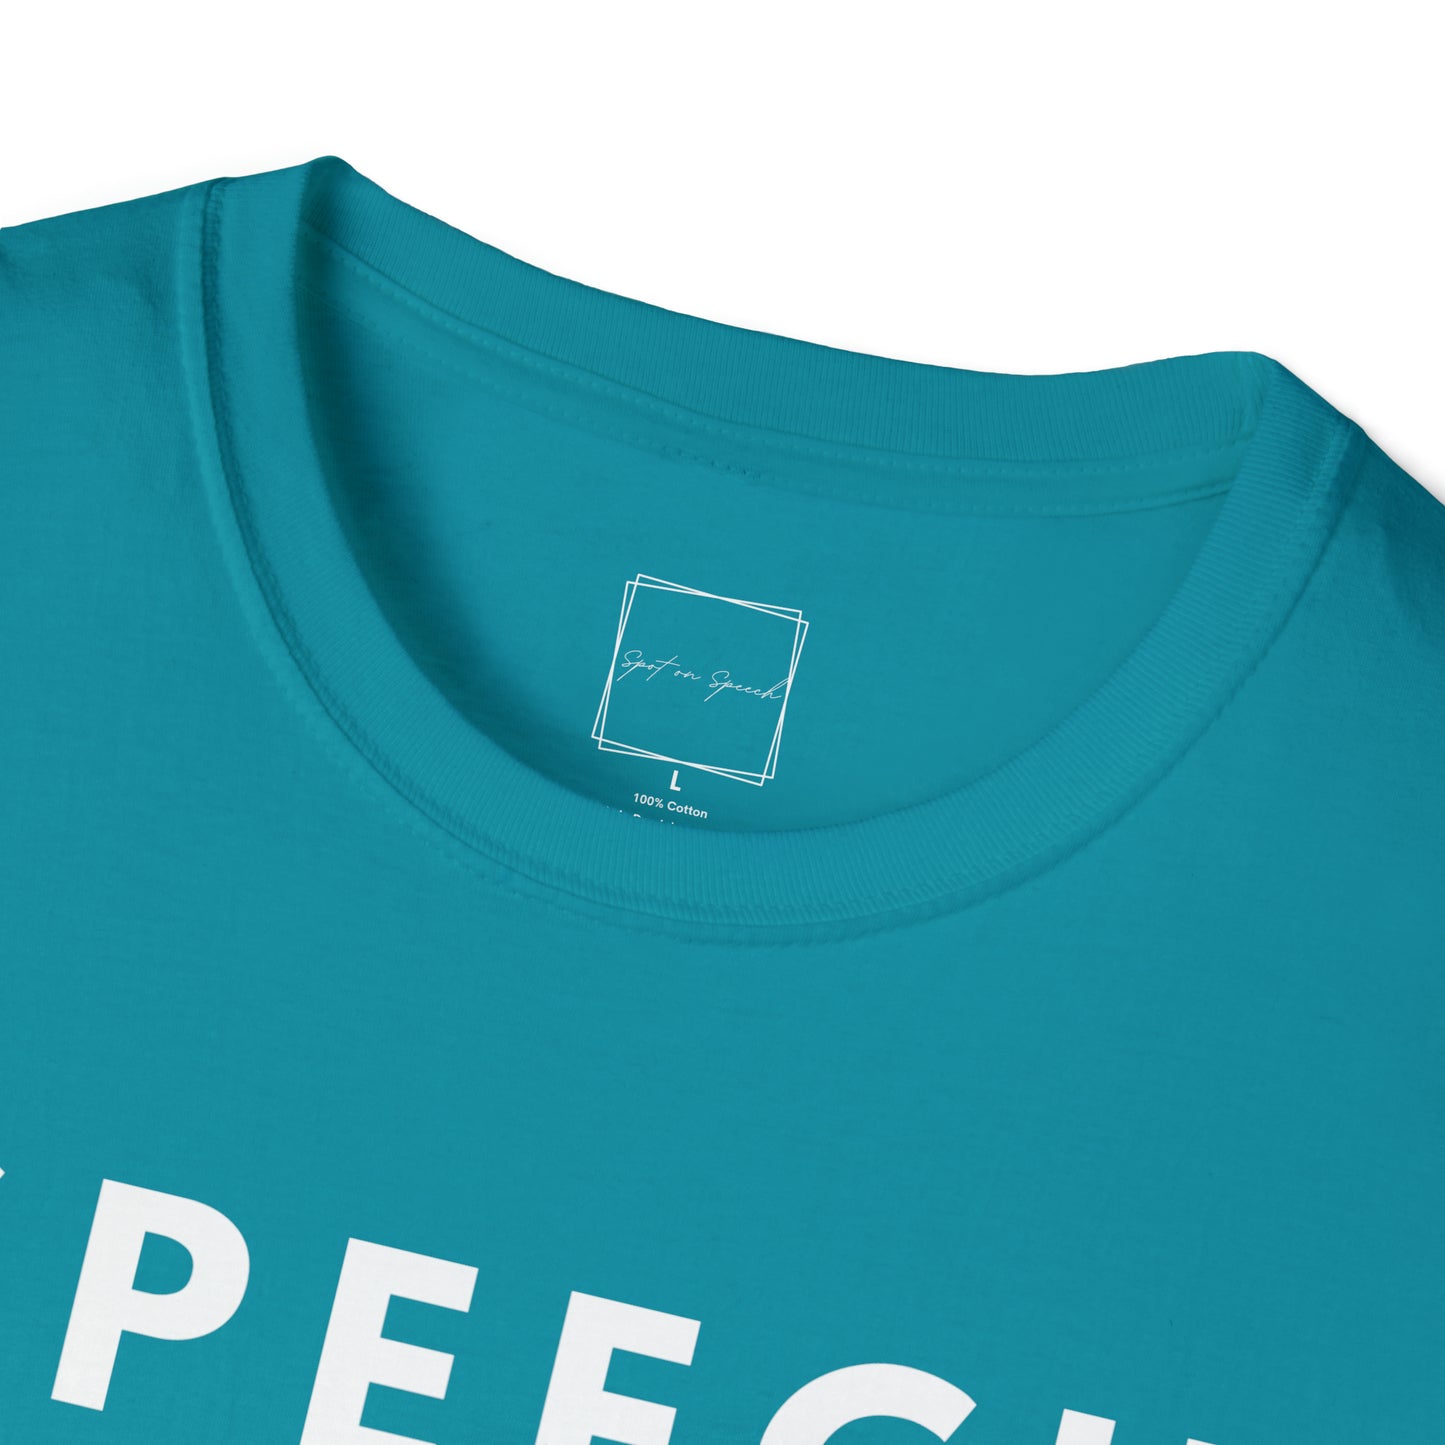 Speech Language Pathologist Unisex Softstyle T-Shirt